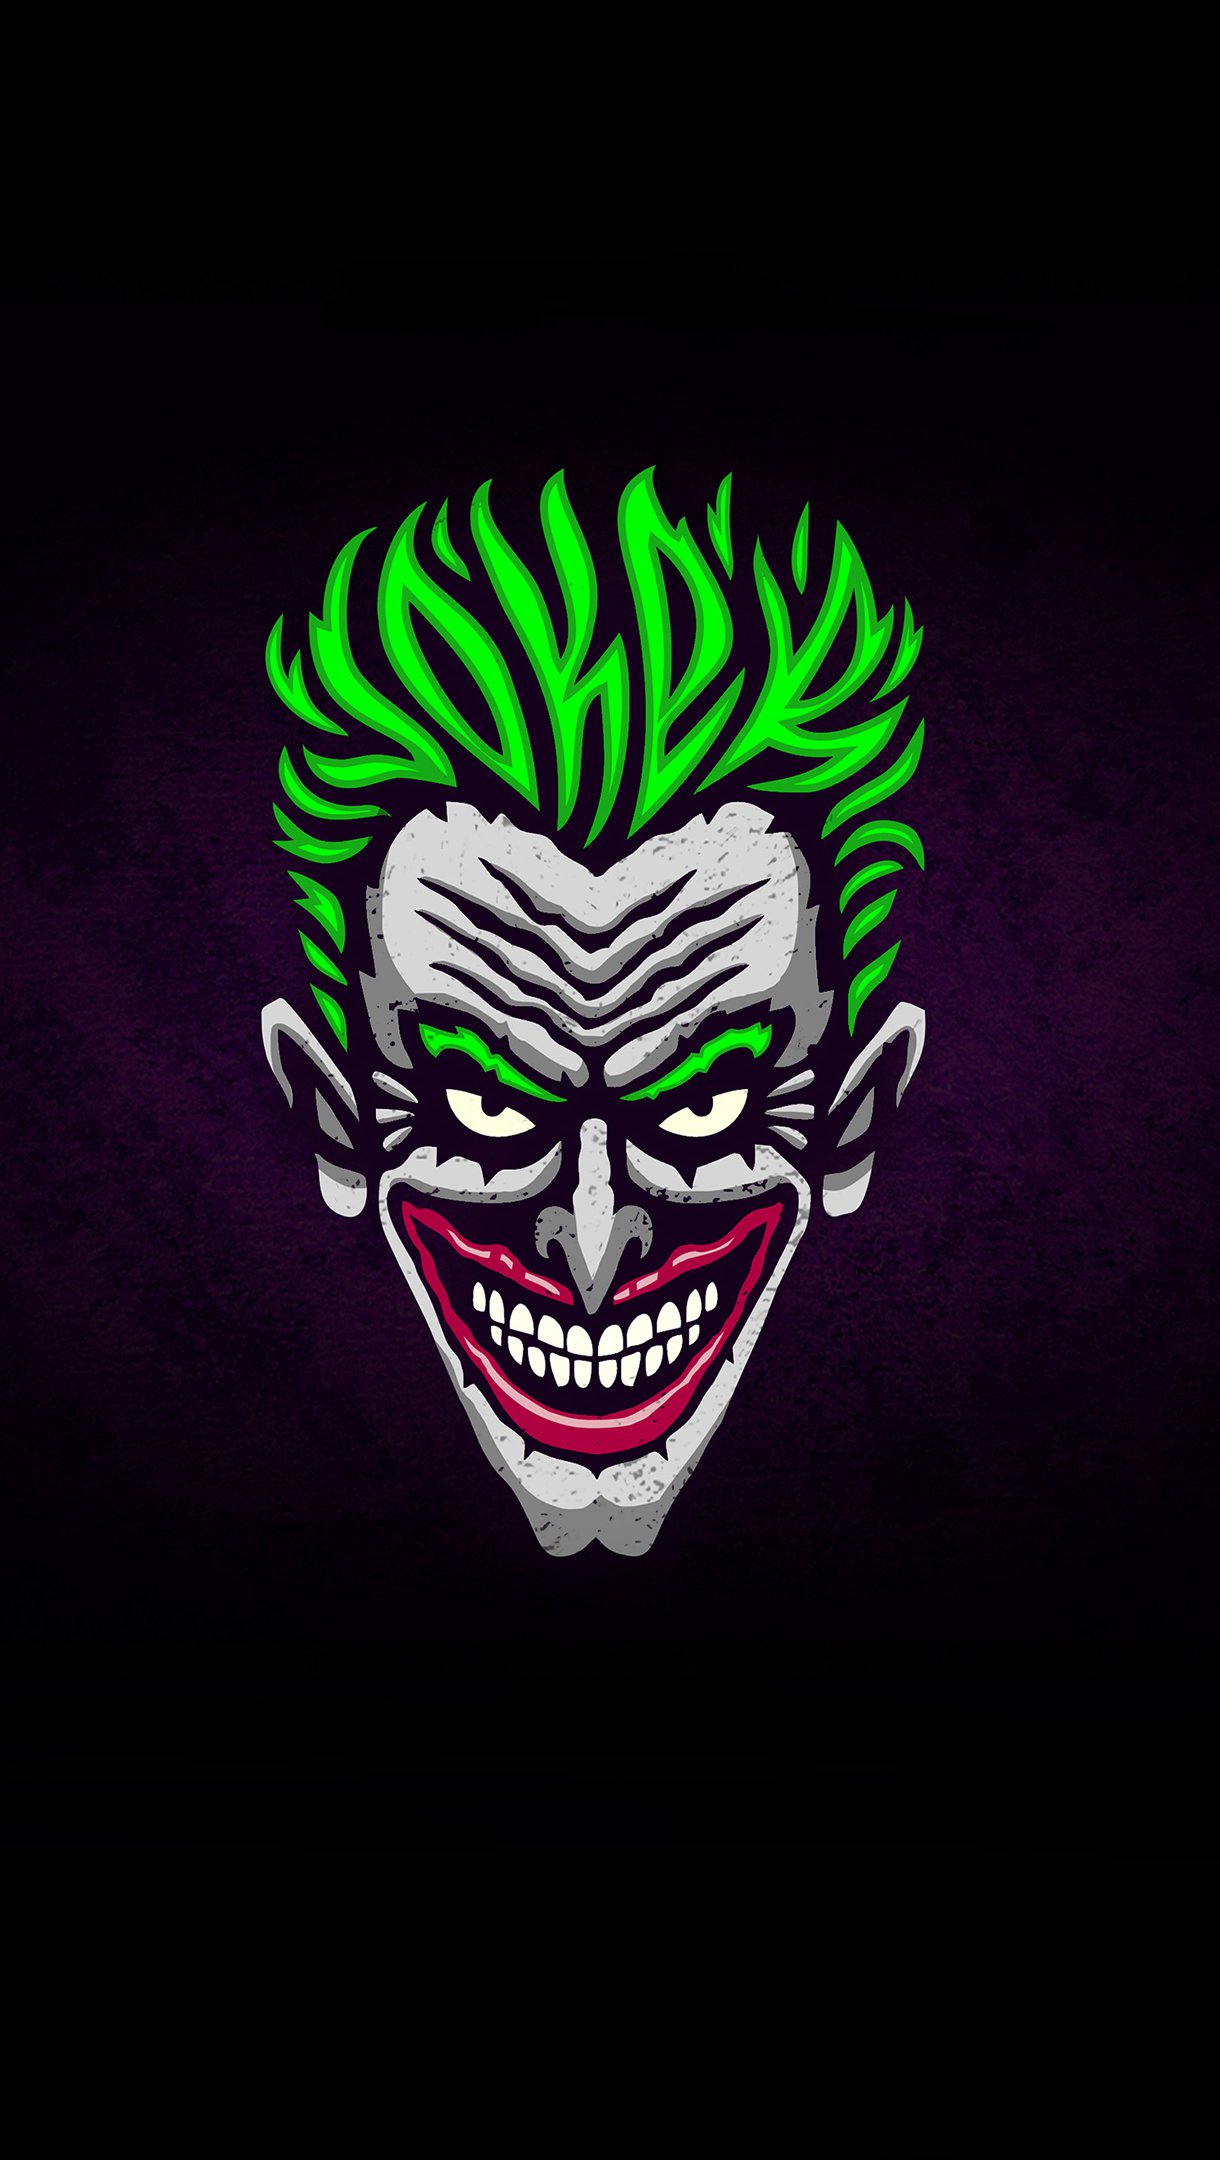 Joker Illustration Minimalist Wallpaper 4k Ultra HD ID:3811